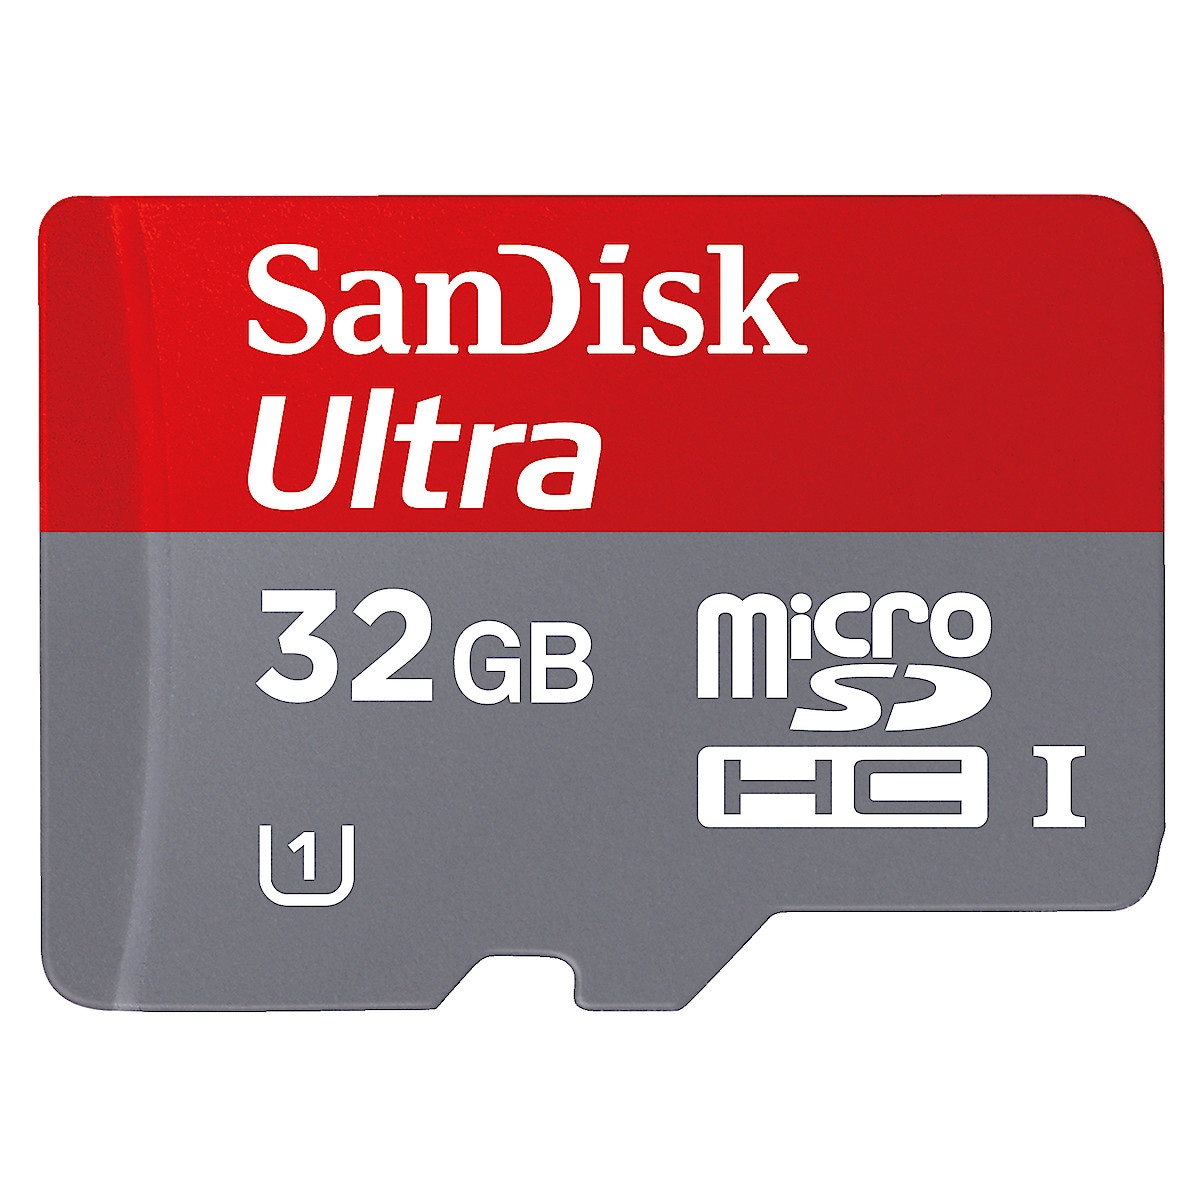 SanDisk MicroSDHC UHS 1 minnekort 